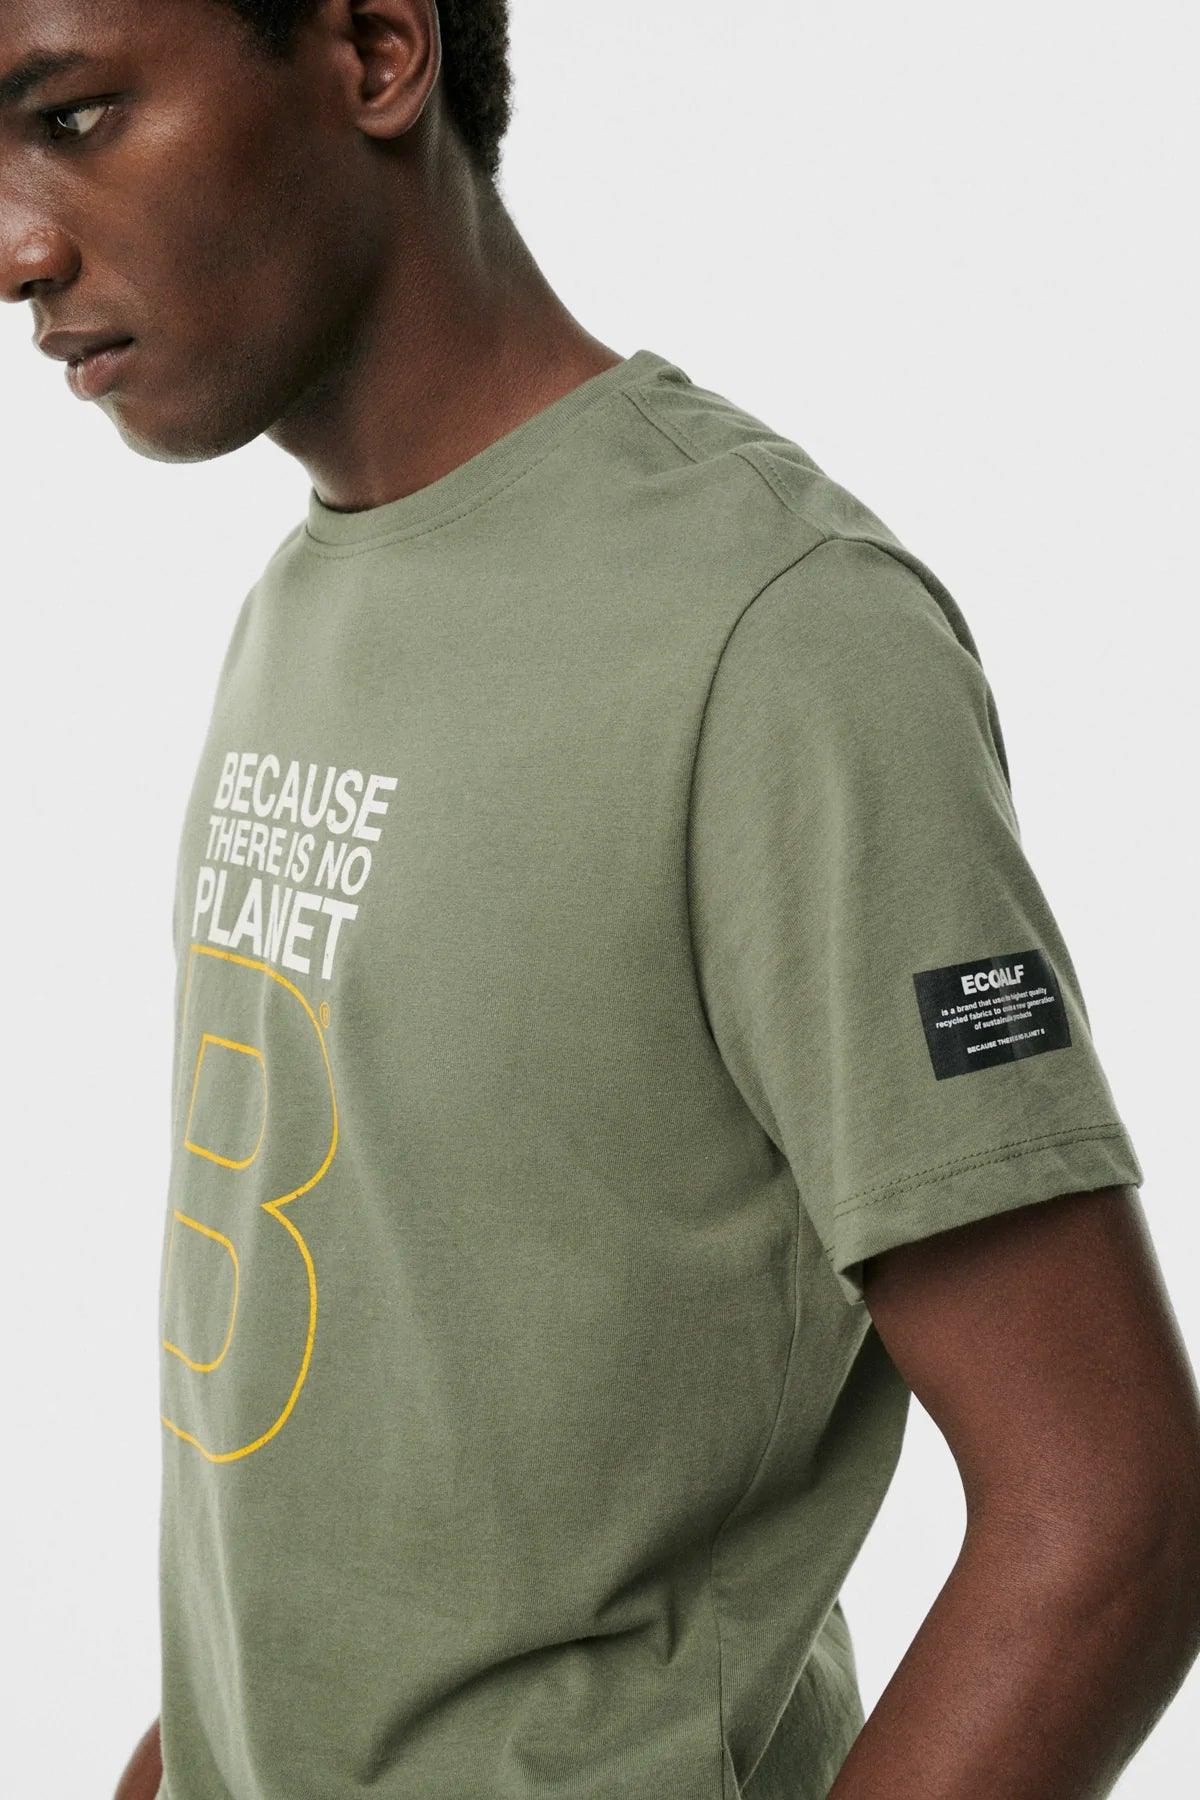 Camiseta Great B Washed Olive - ECRU